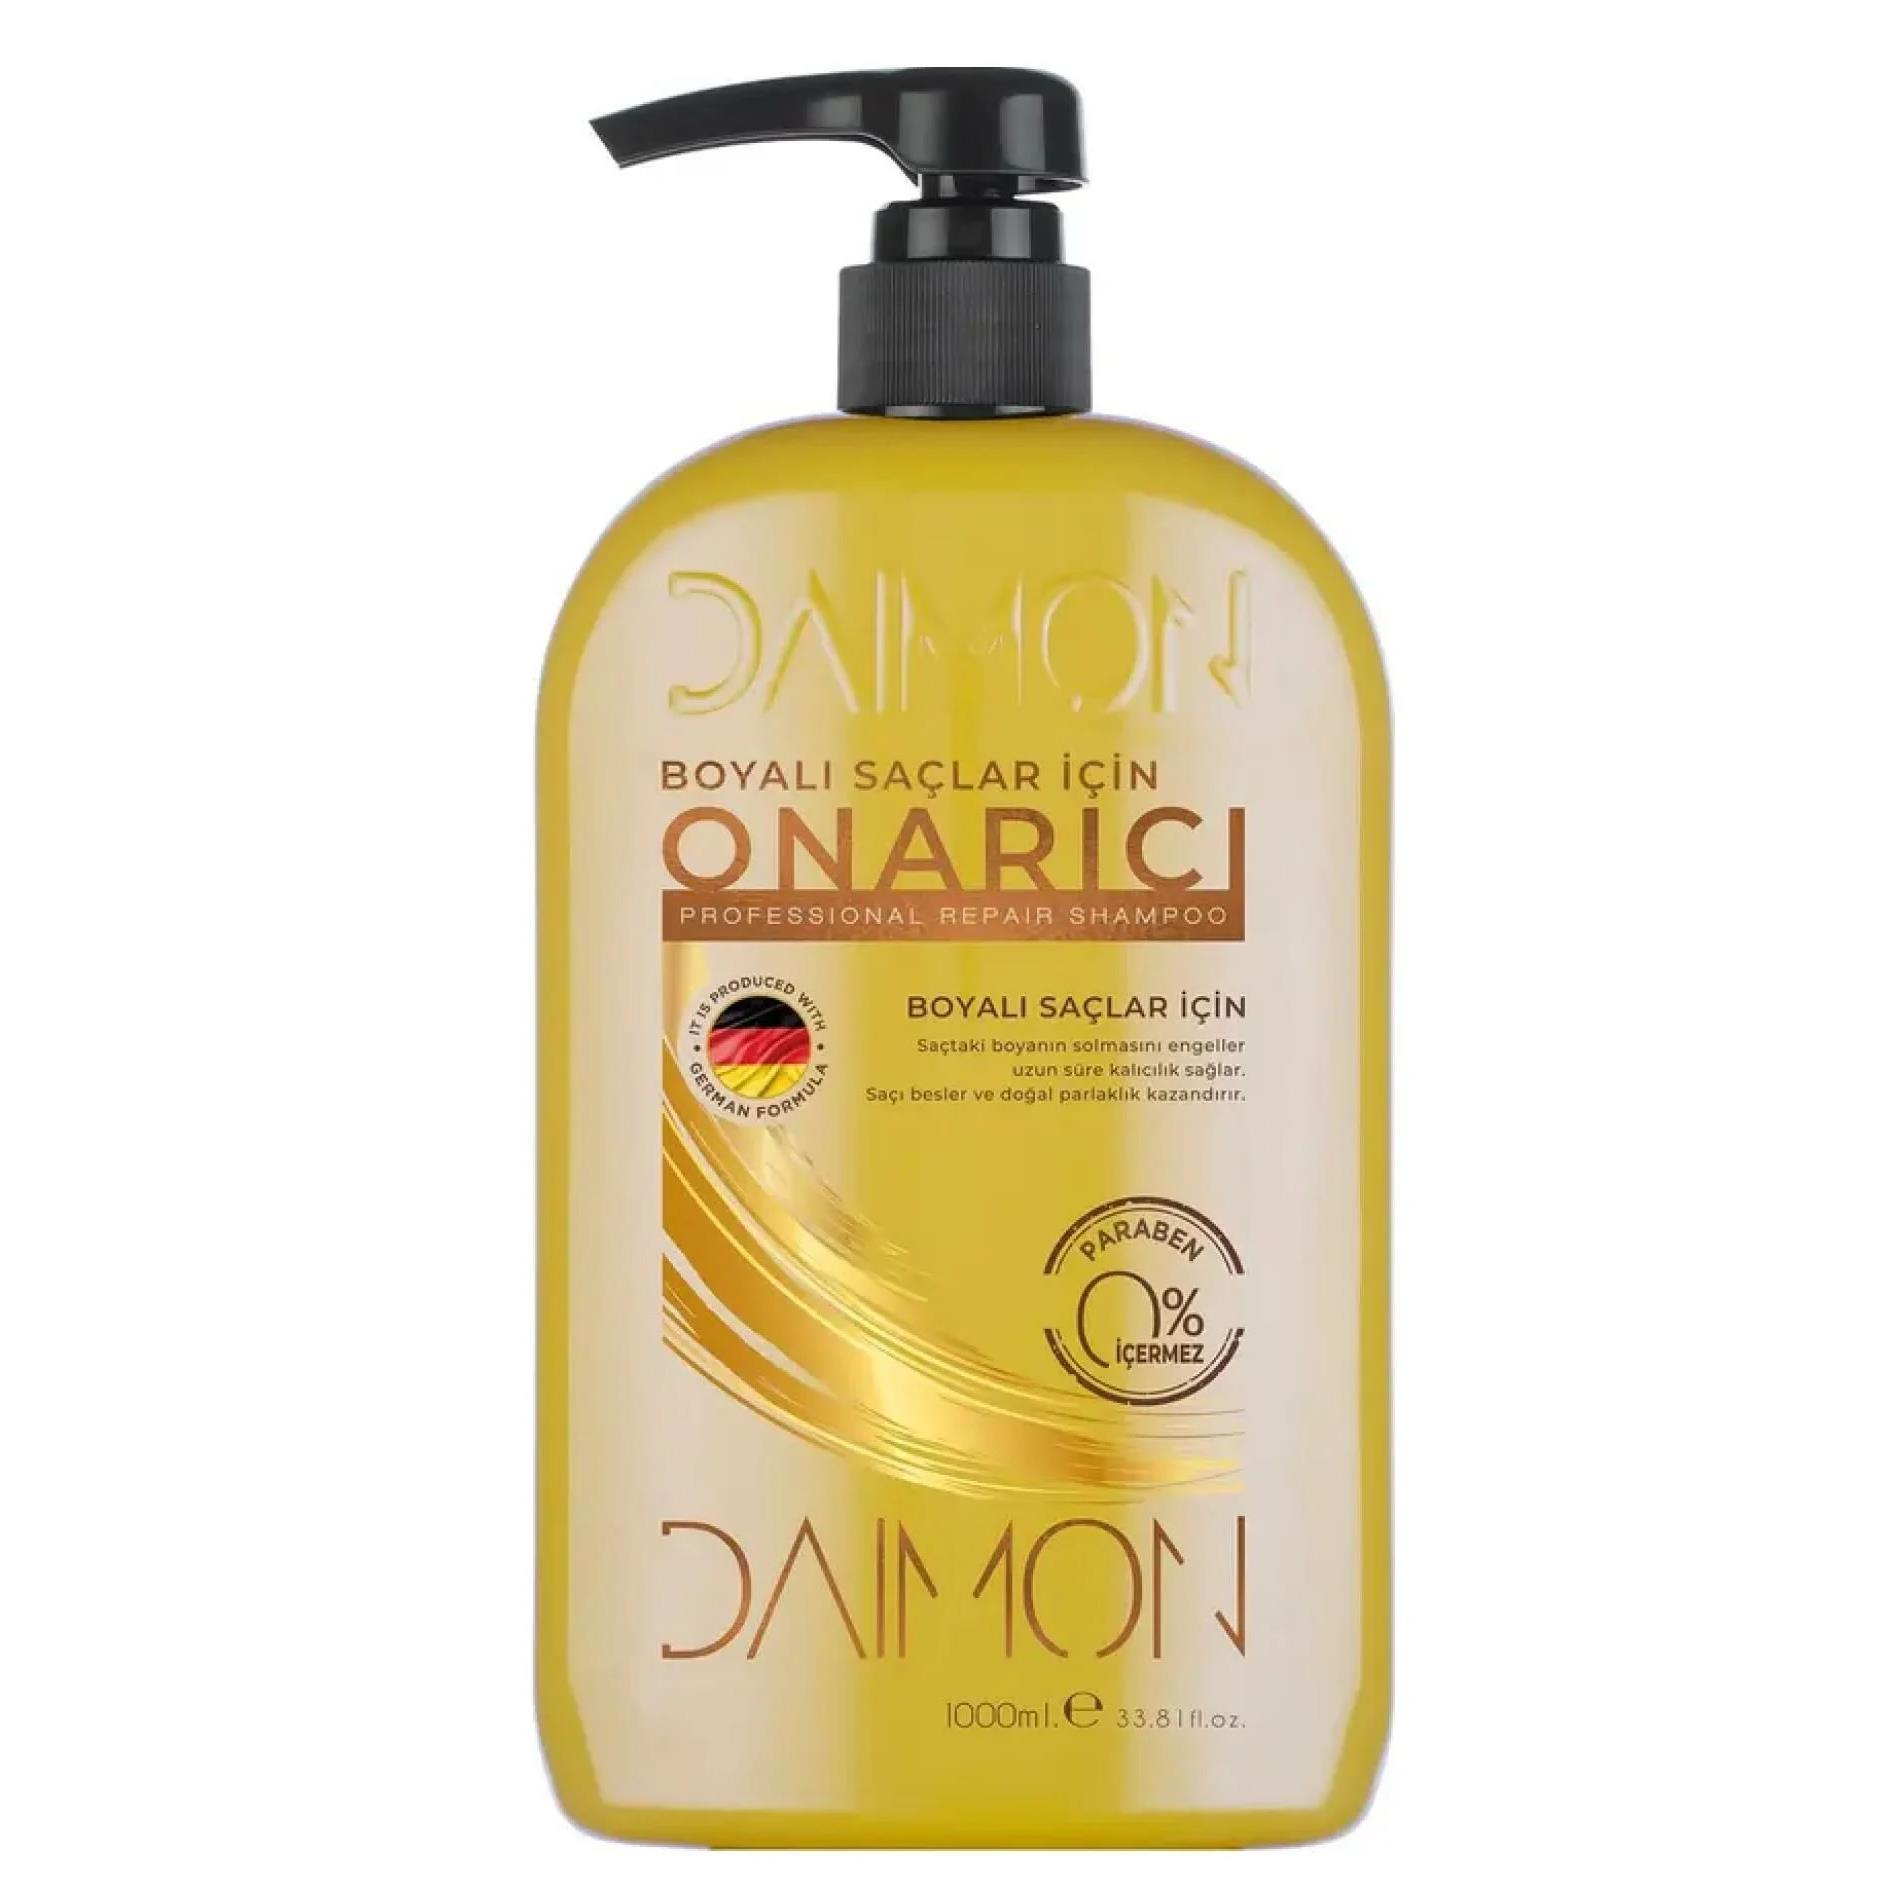 Daimon Premium Şampuan 1000 ml Boyalı Saç